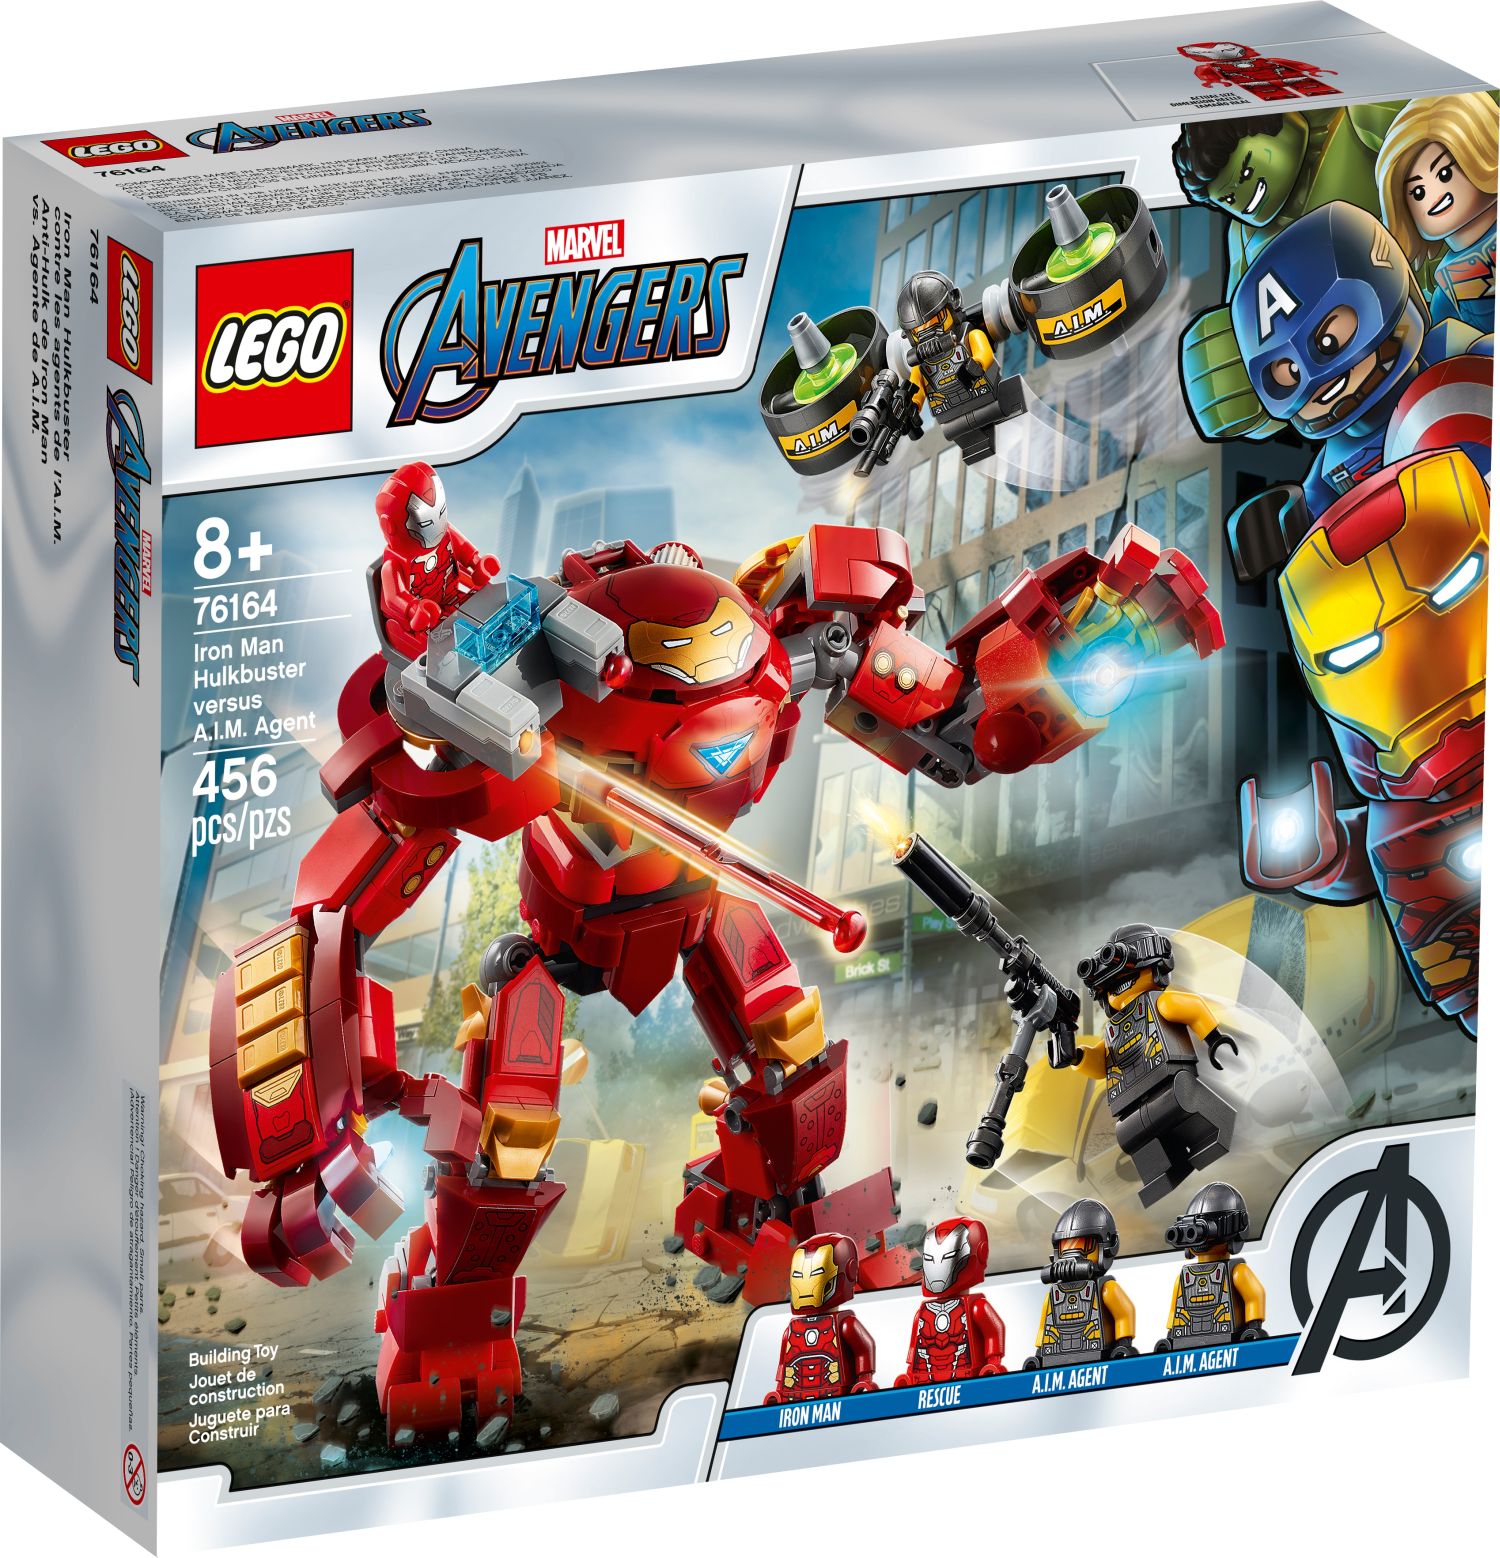 Brickfinder Lego Marvel Summer 2020 Sets Launching June 21st